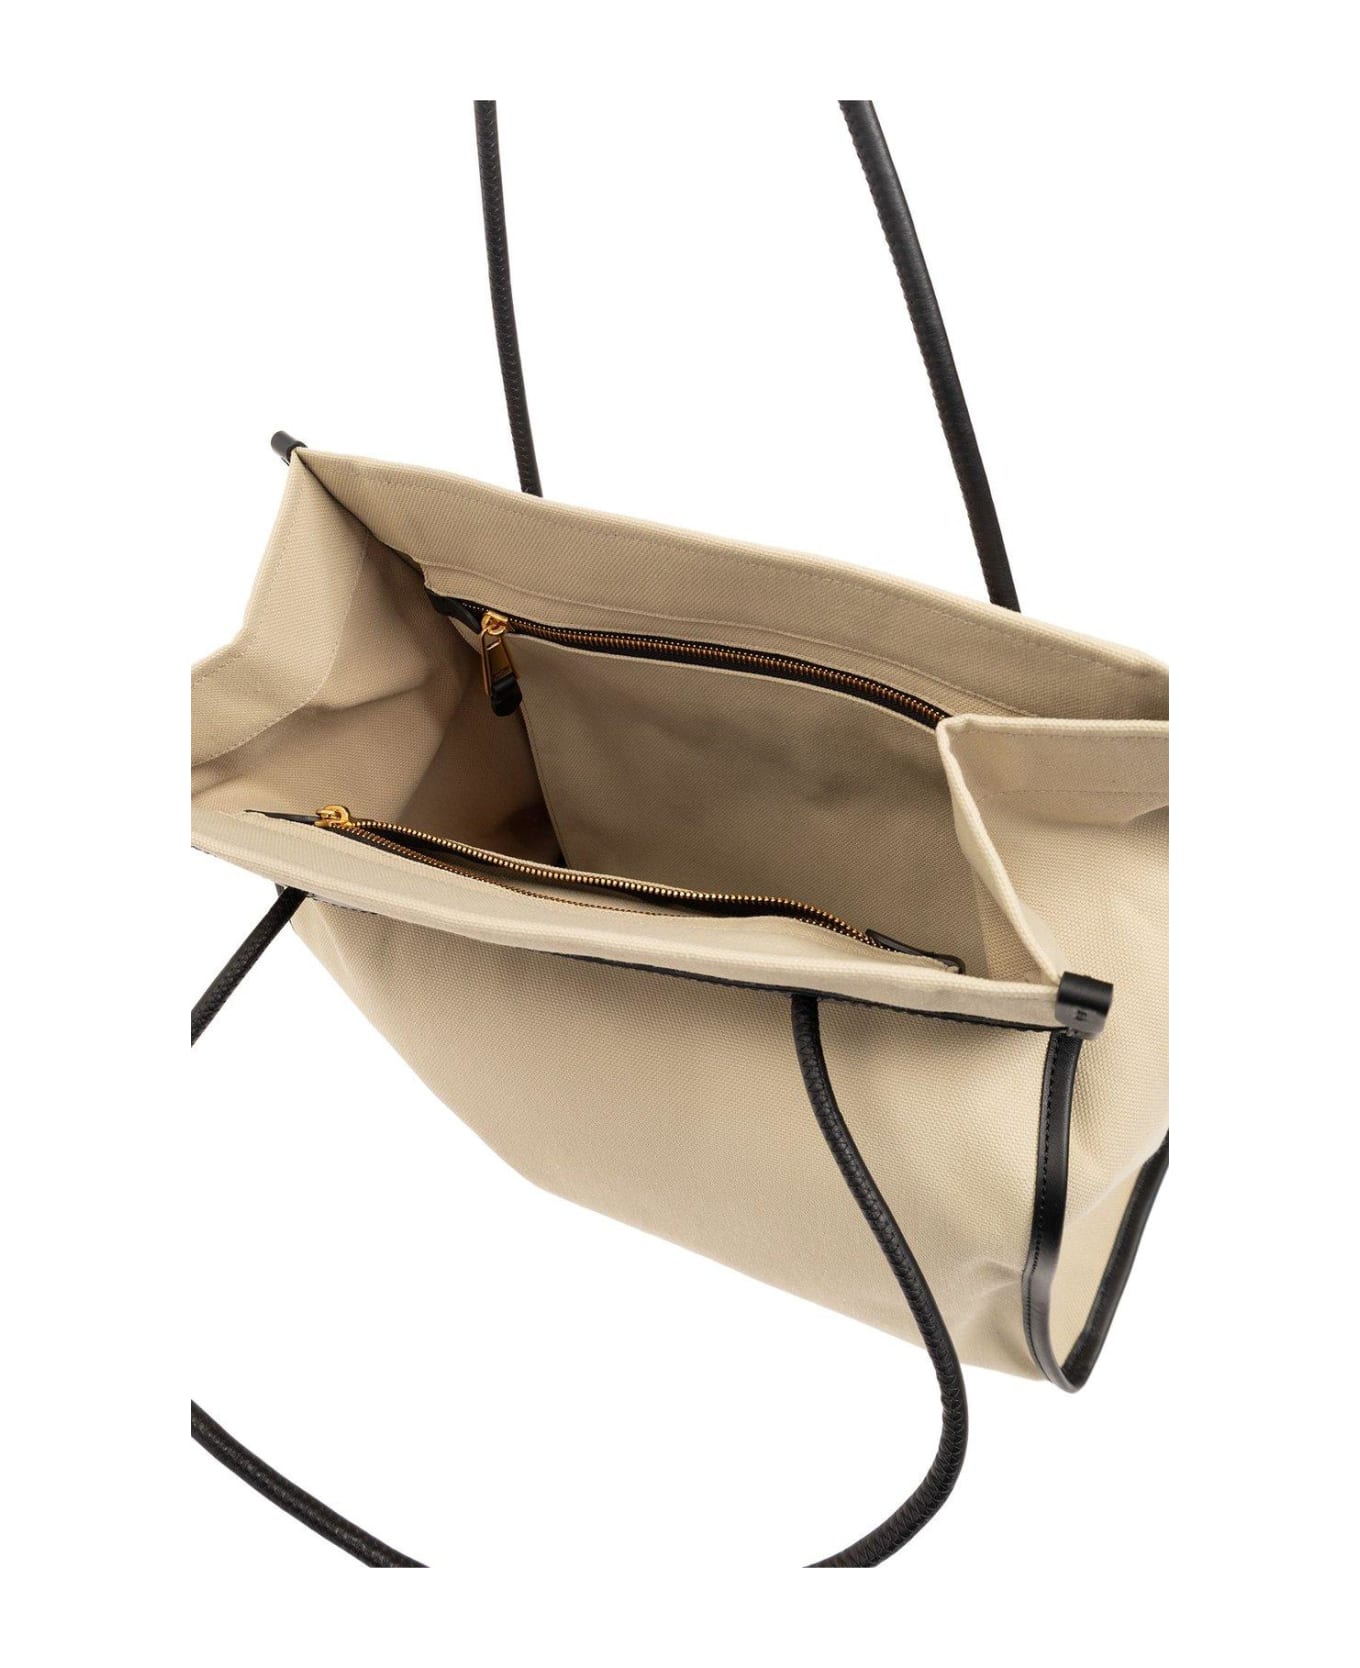 Moschino Open-top Shopper Bag - BEIGE トートバッグ